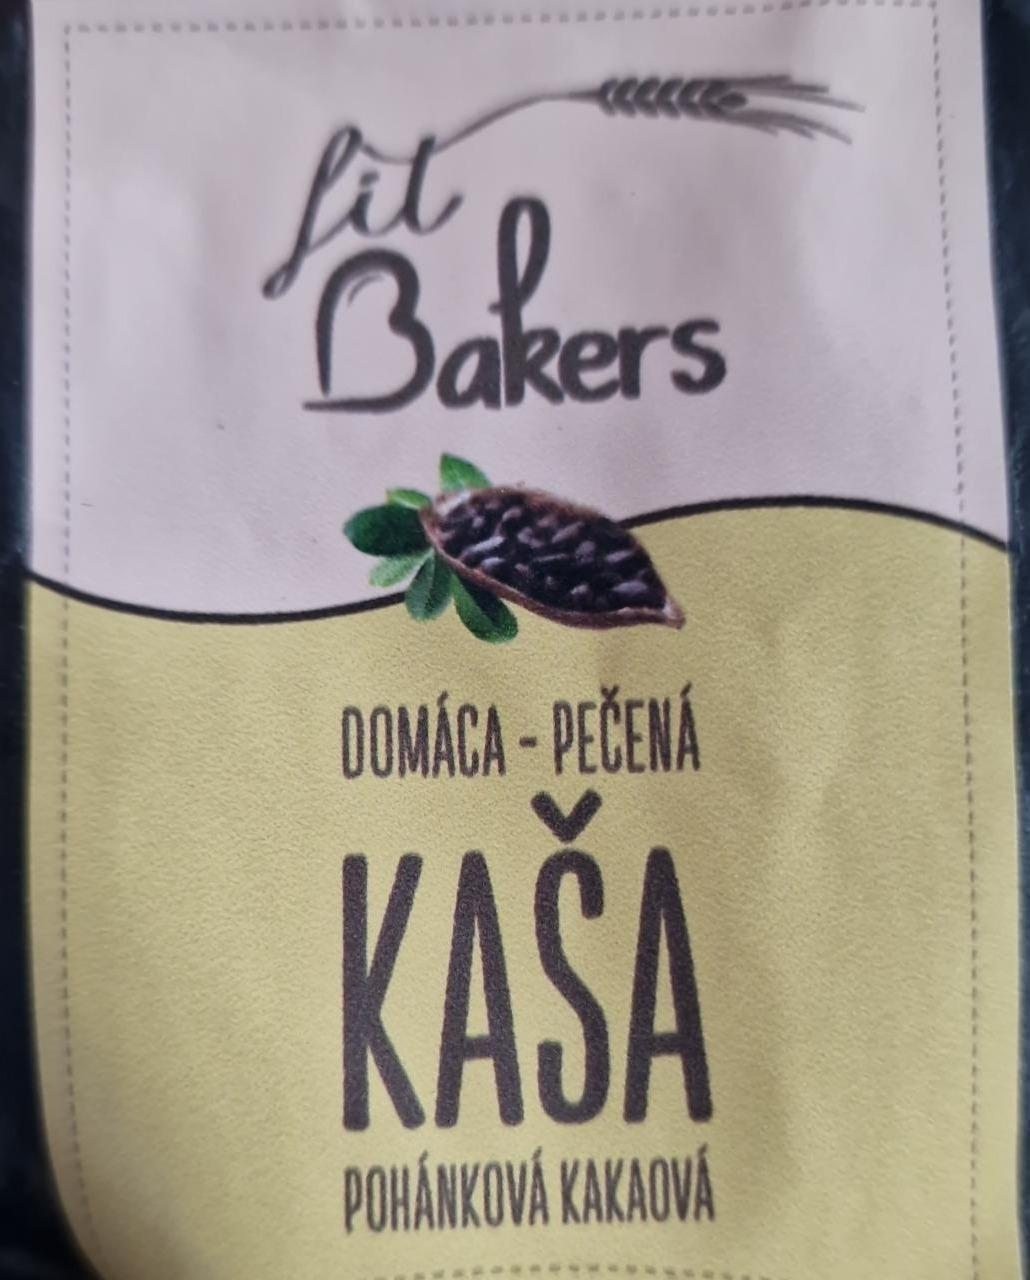 Fotografie - Domáca pečená kaša pohánková kakaová Fit Bakers